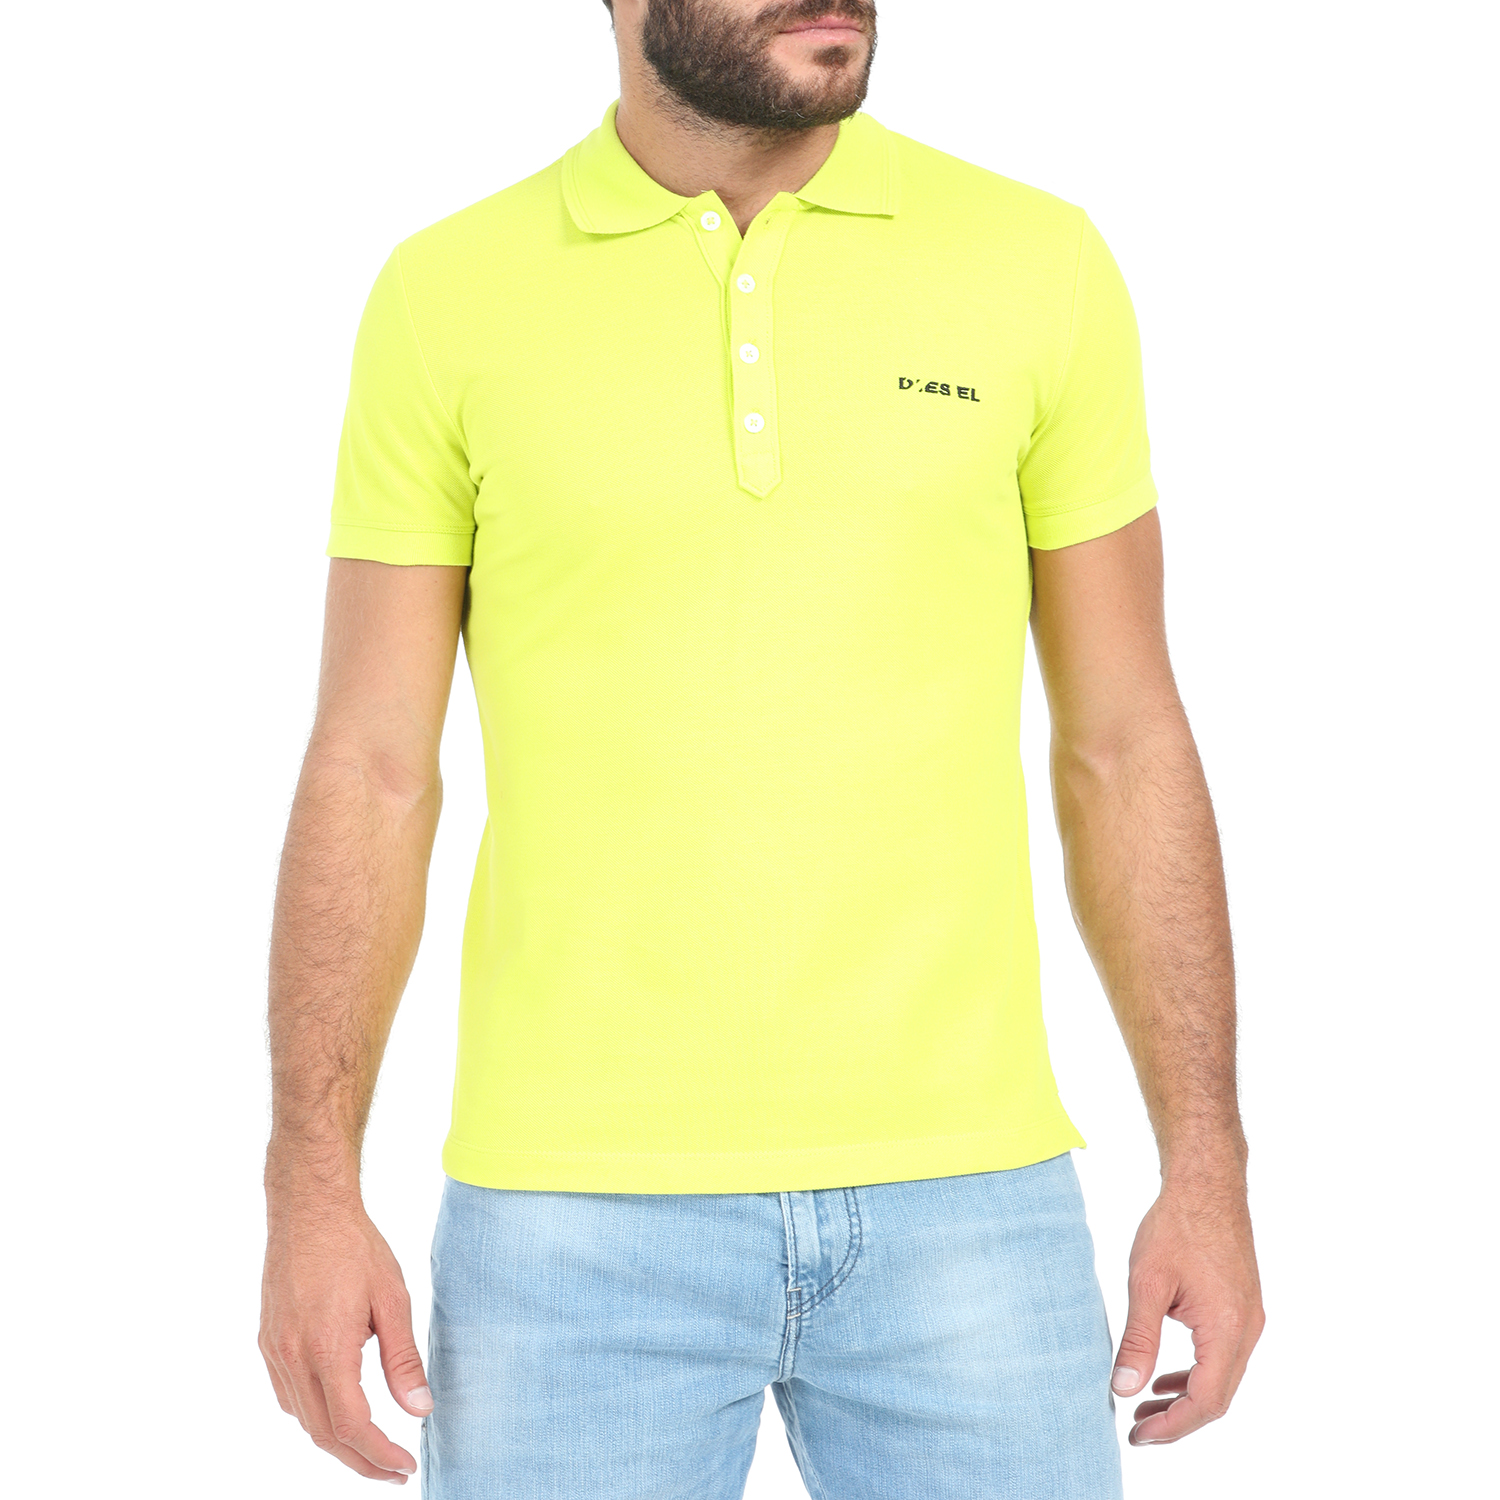 DIESEL - Ανδρική polo μπλούζα DIESEL T-HEAL-BROKEN-ST POLO κίτρινη